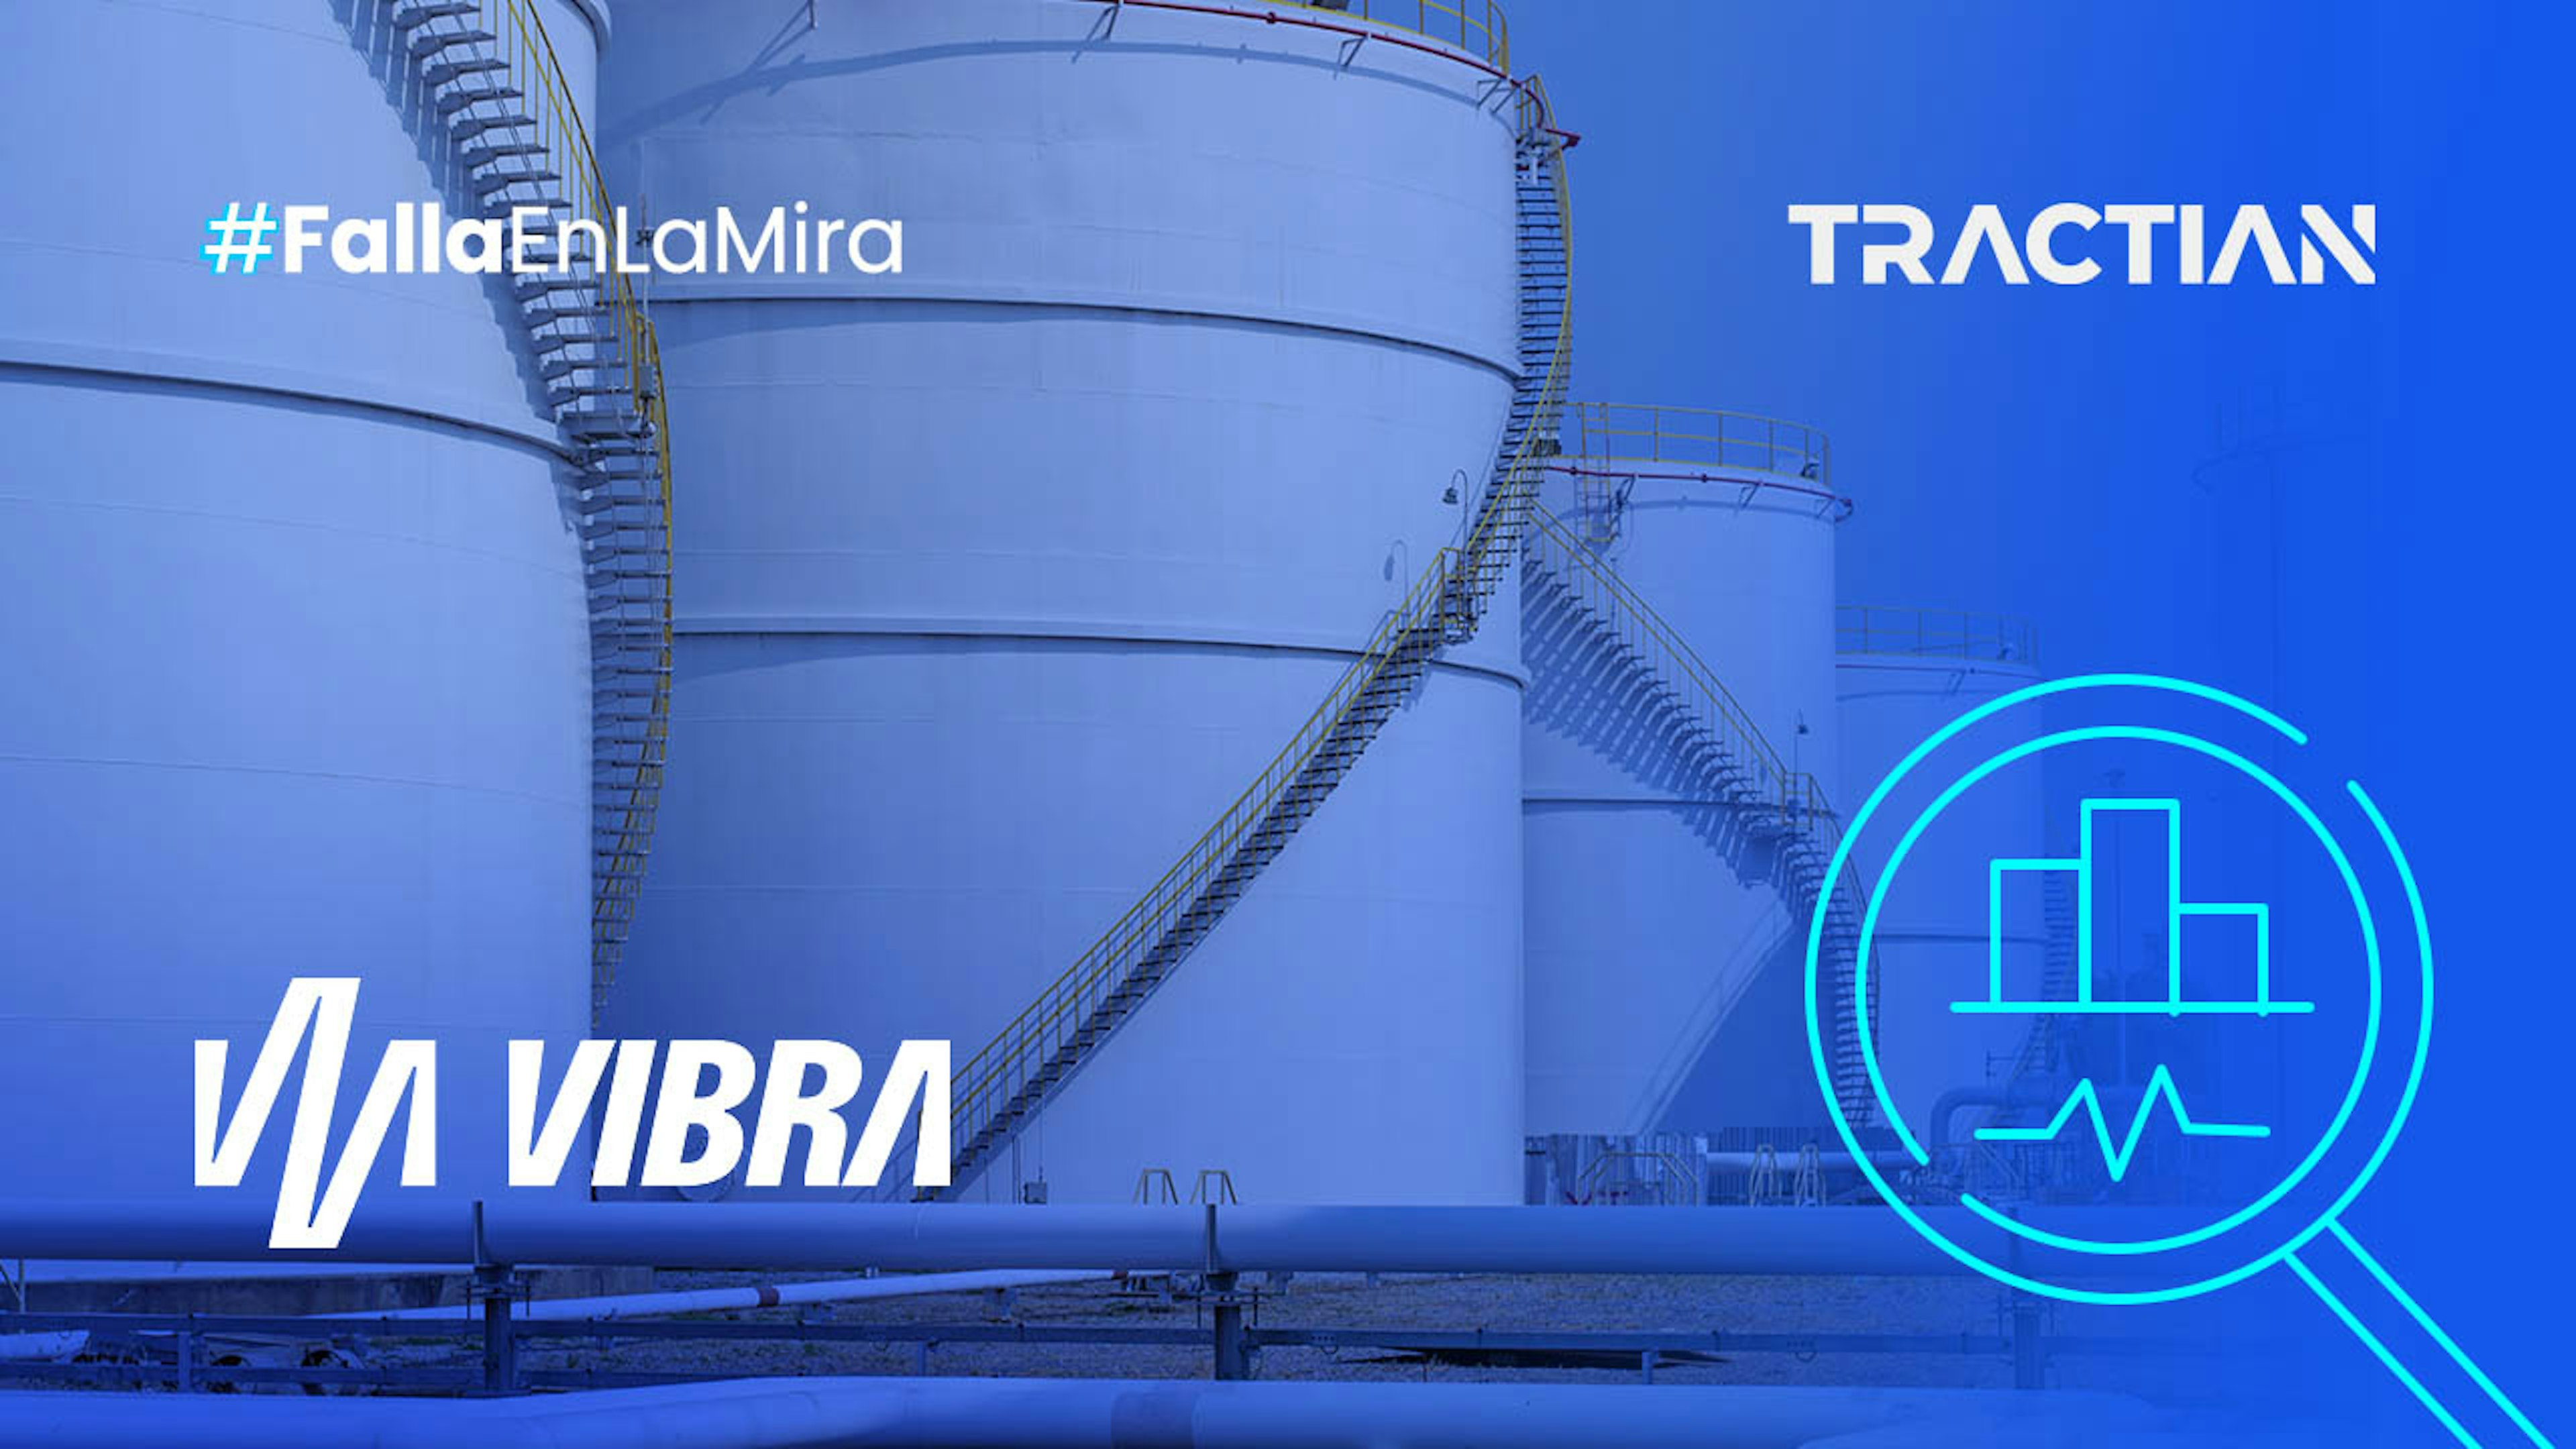 Vibra consiguió el ROI por 14x gracias a su inversión en monitoreo